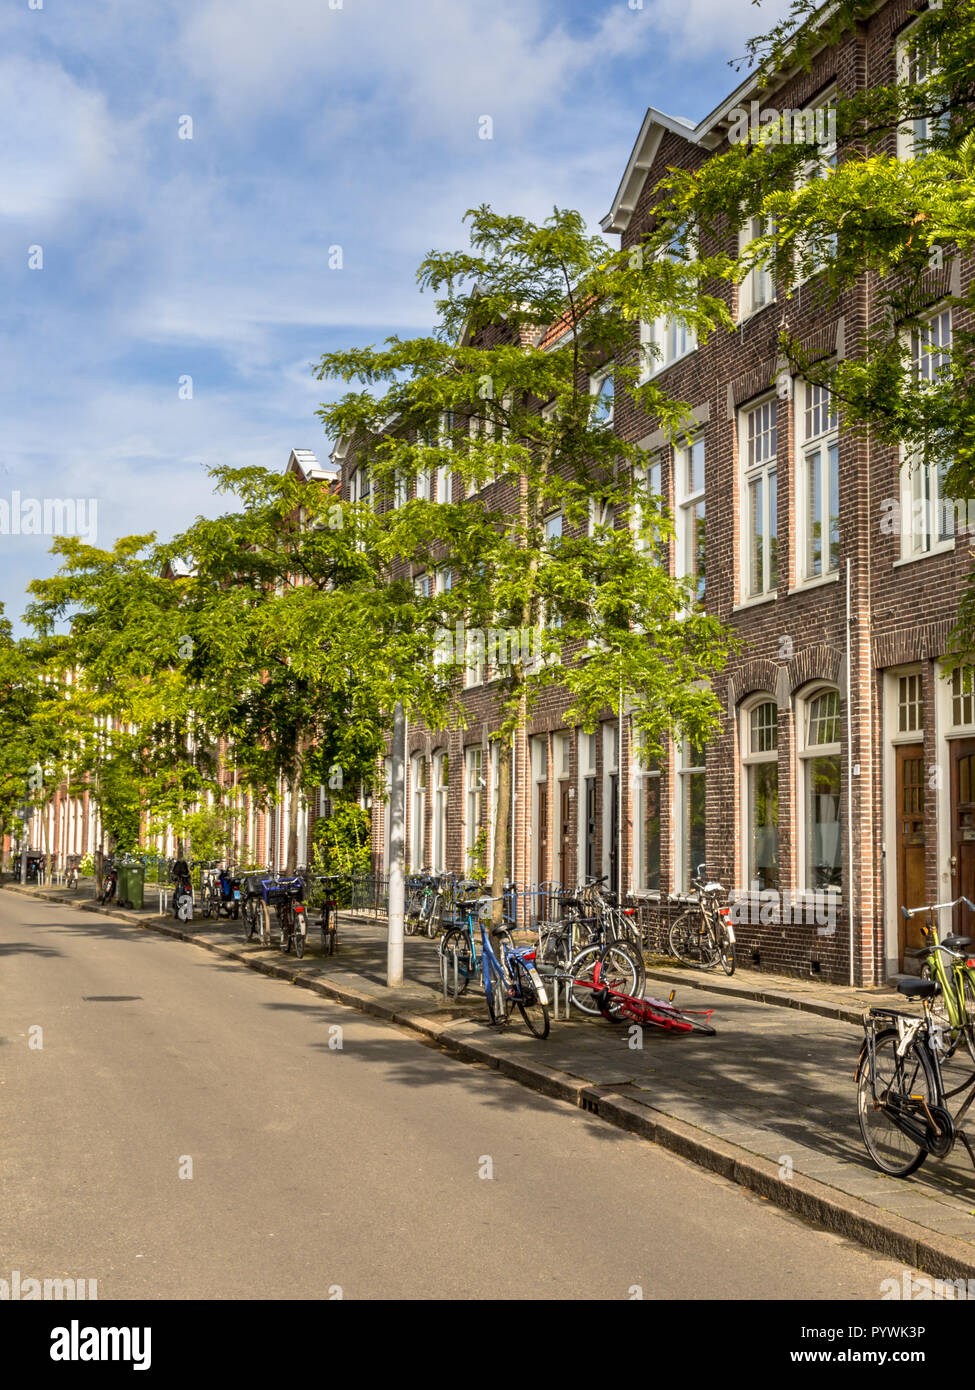 Dutch rue historique avec de vieilles maisons datant de 1910 à groningen Pays-Bas Banque D'Images